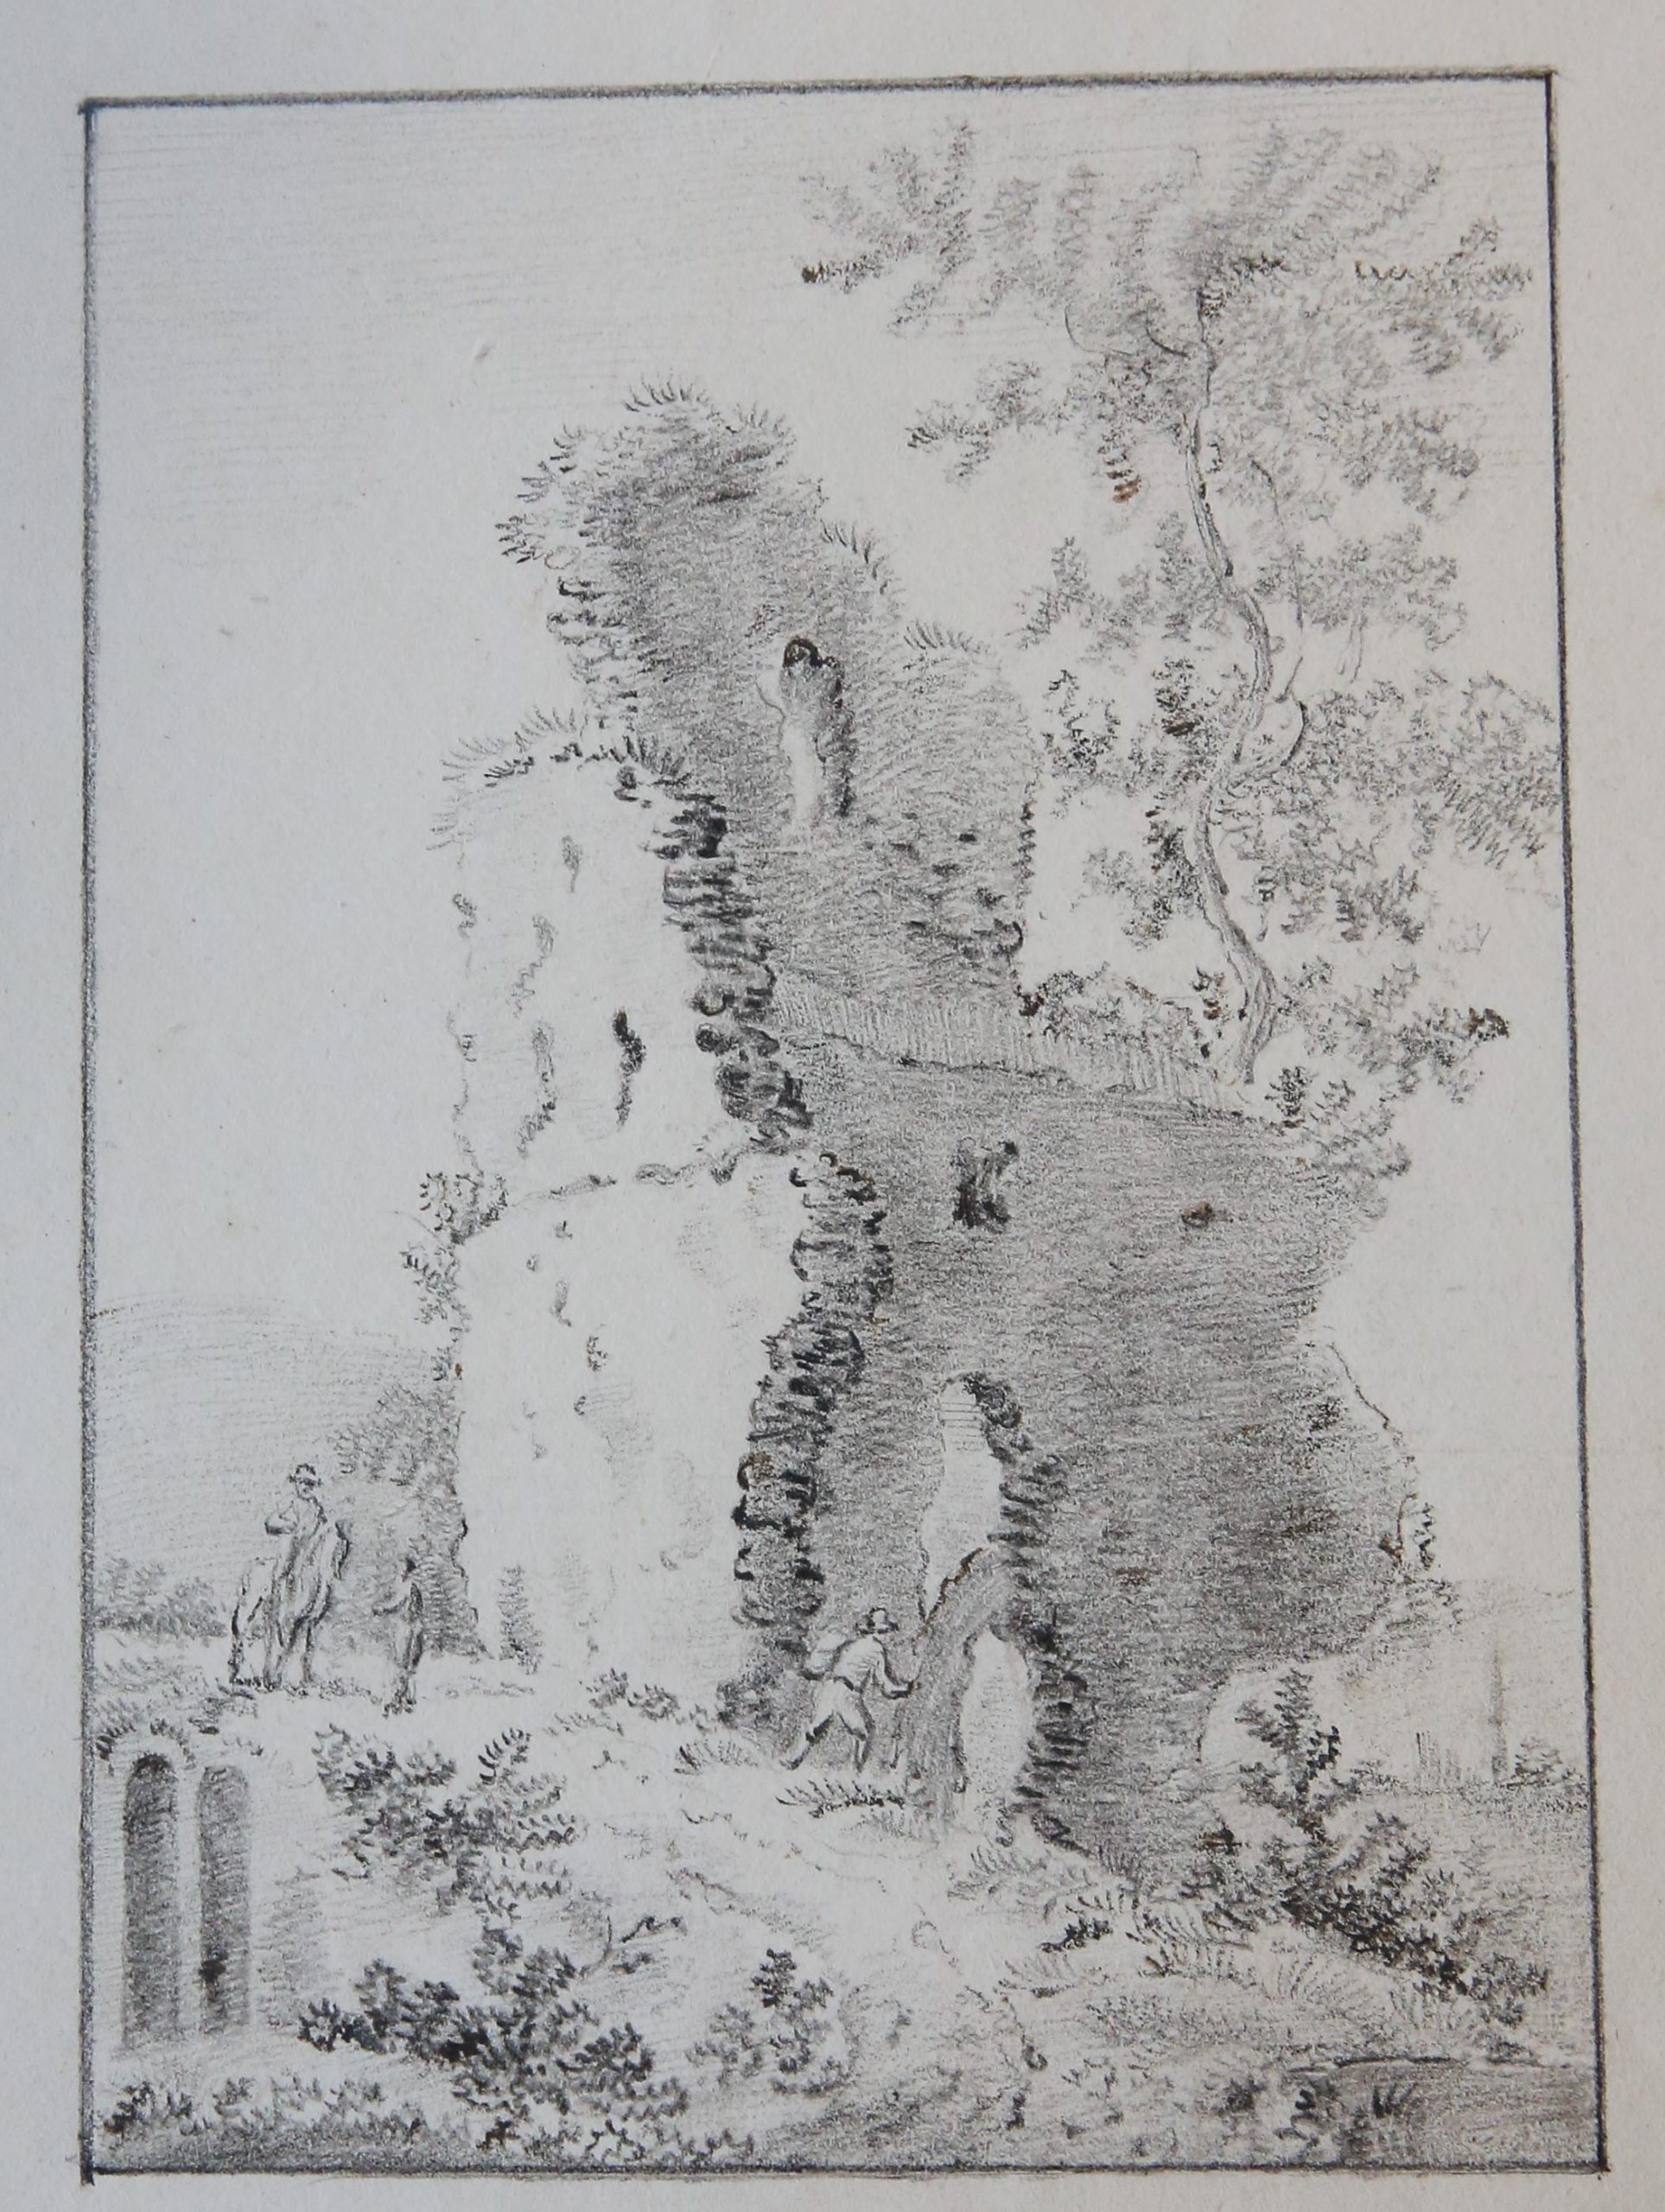 [Antique drawing/tekening] Figures approaching a ruin (figuren voor een ruïne), ca. 1850-1900.